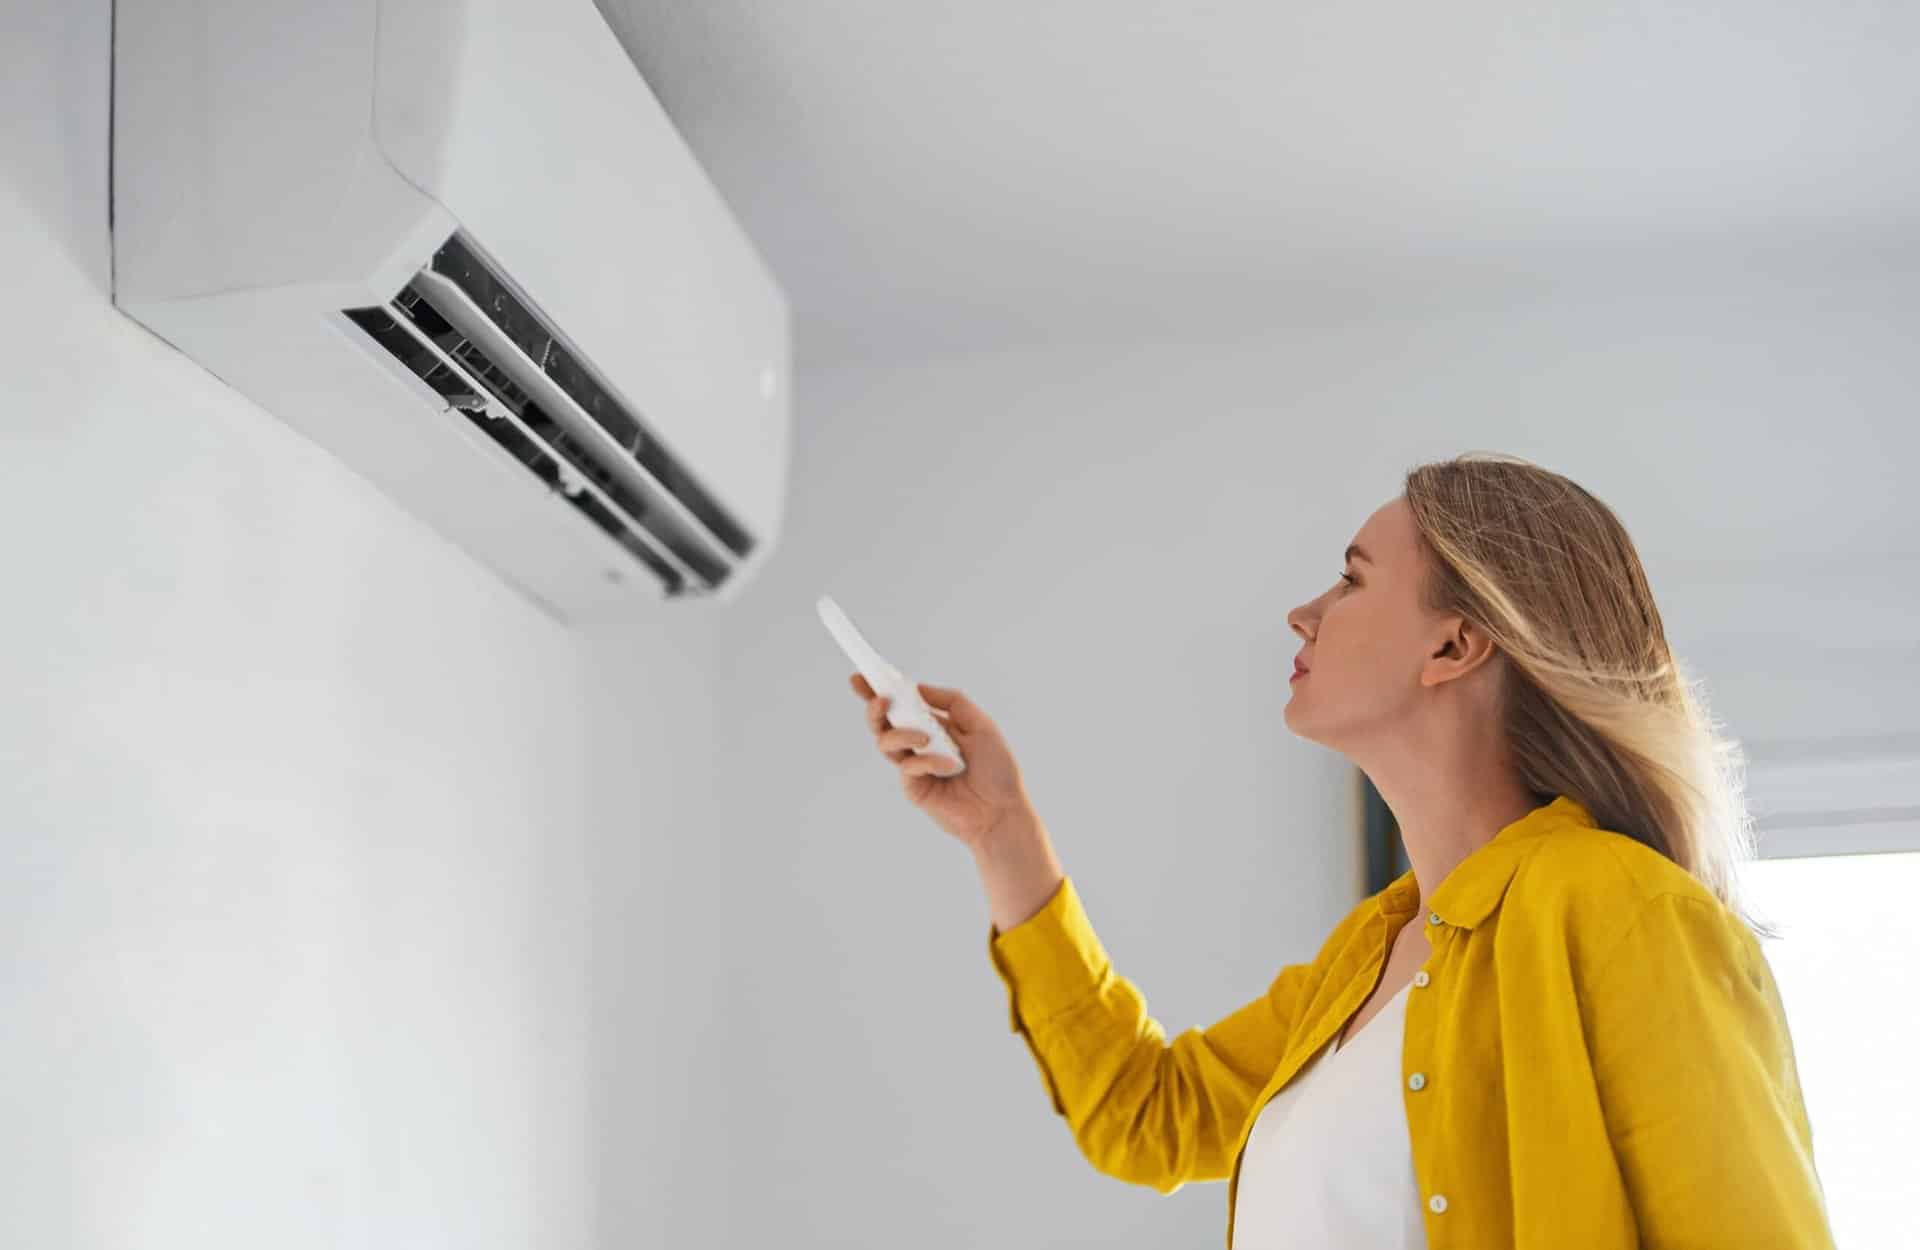 Éteindre la climatisation pendant votre absence permet-il d'économiser de l'énergie ? shutterstock 2120547839 scaled